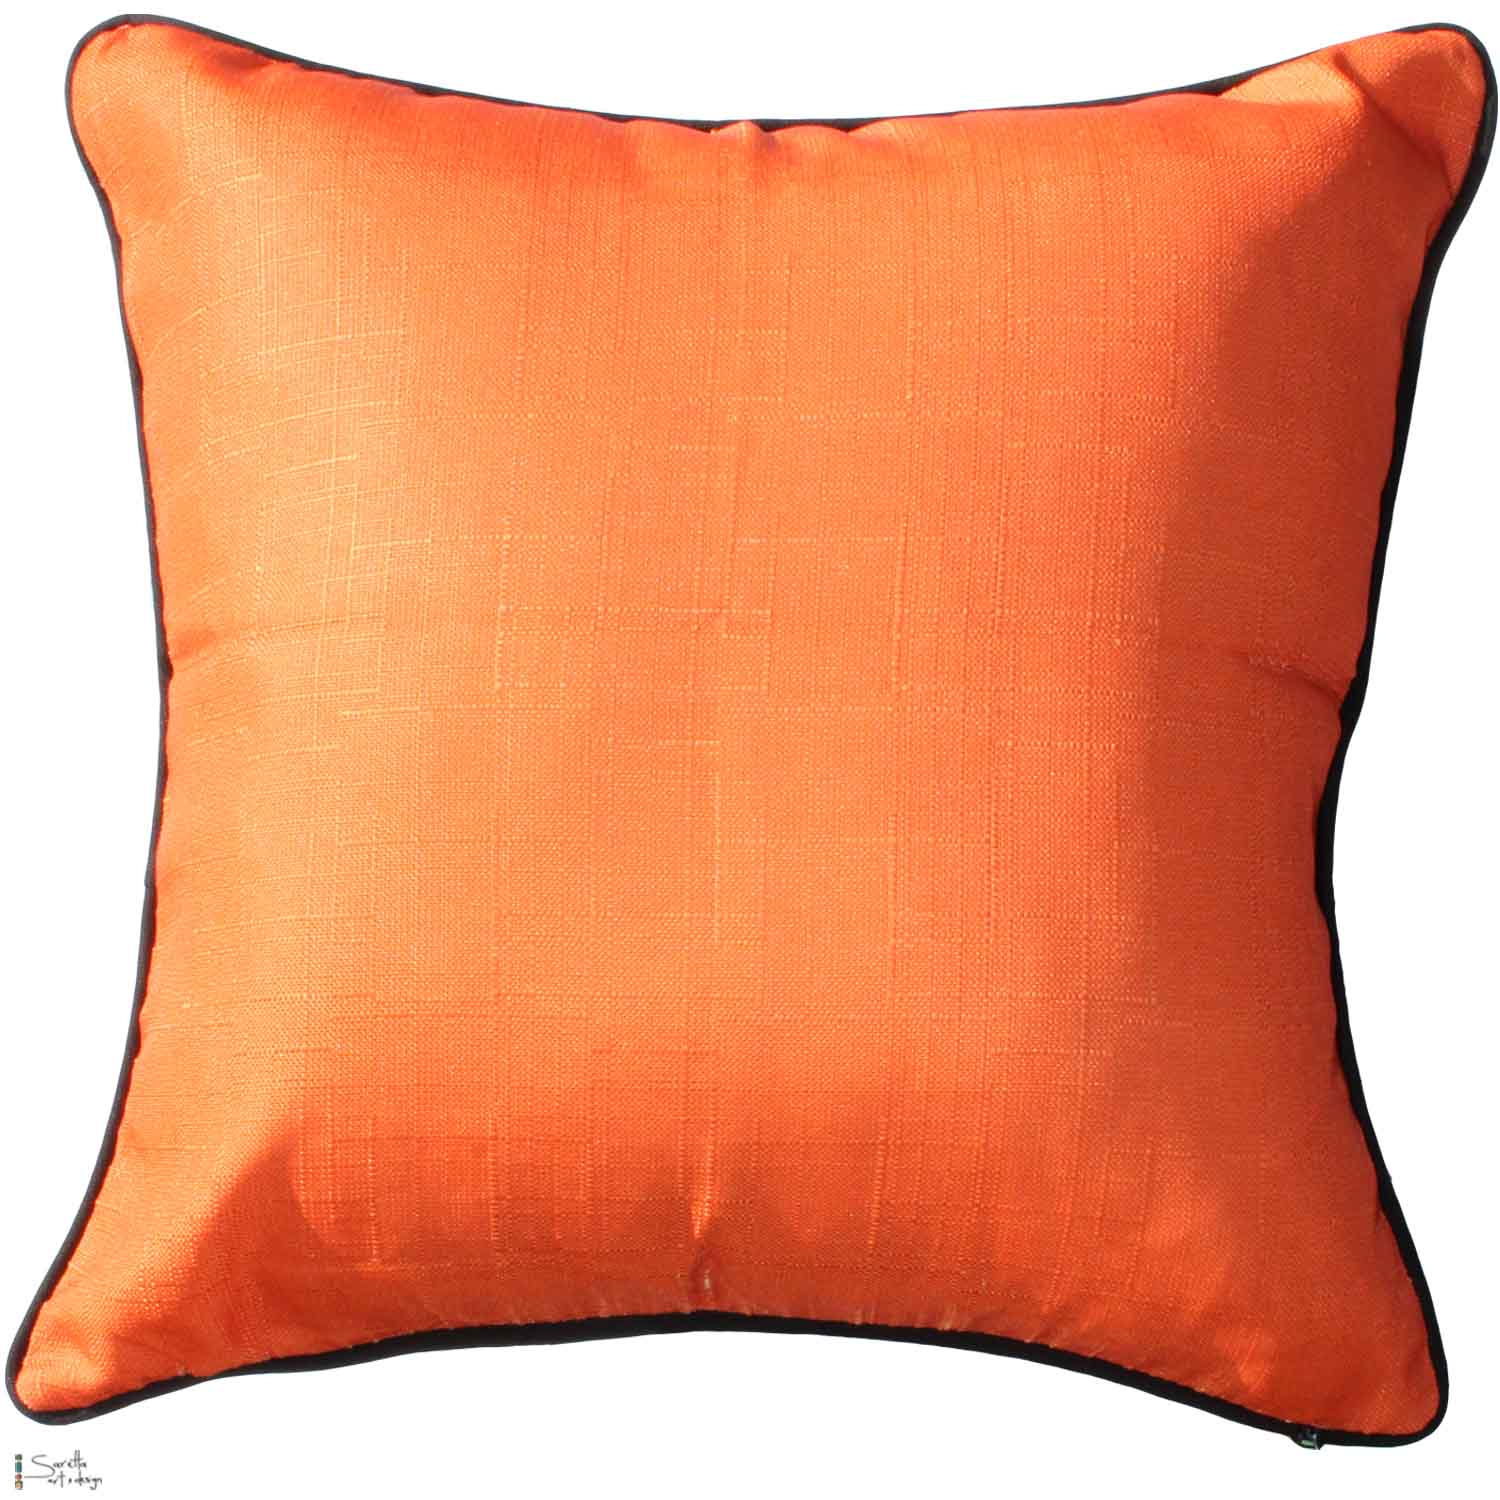 Cushion Cover - Borii